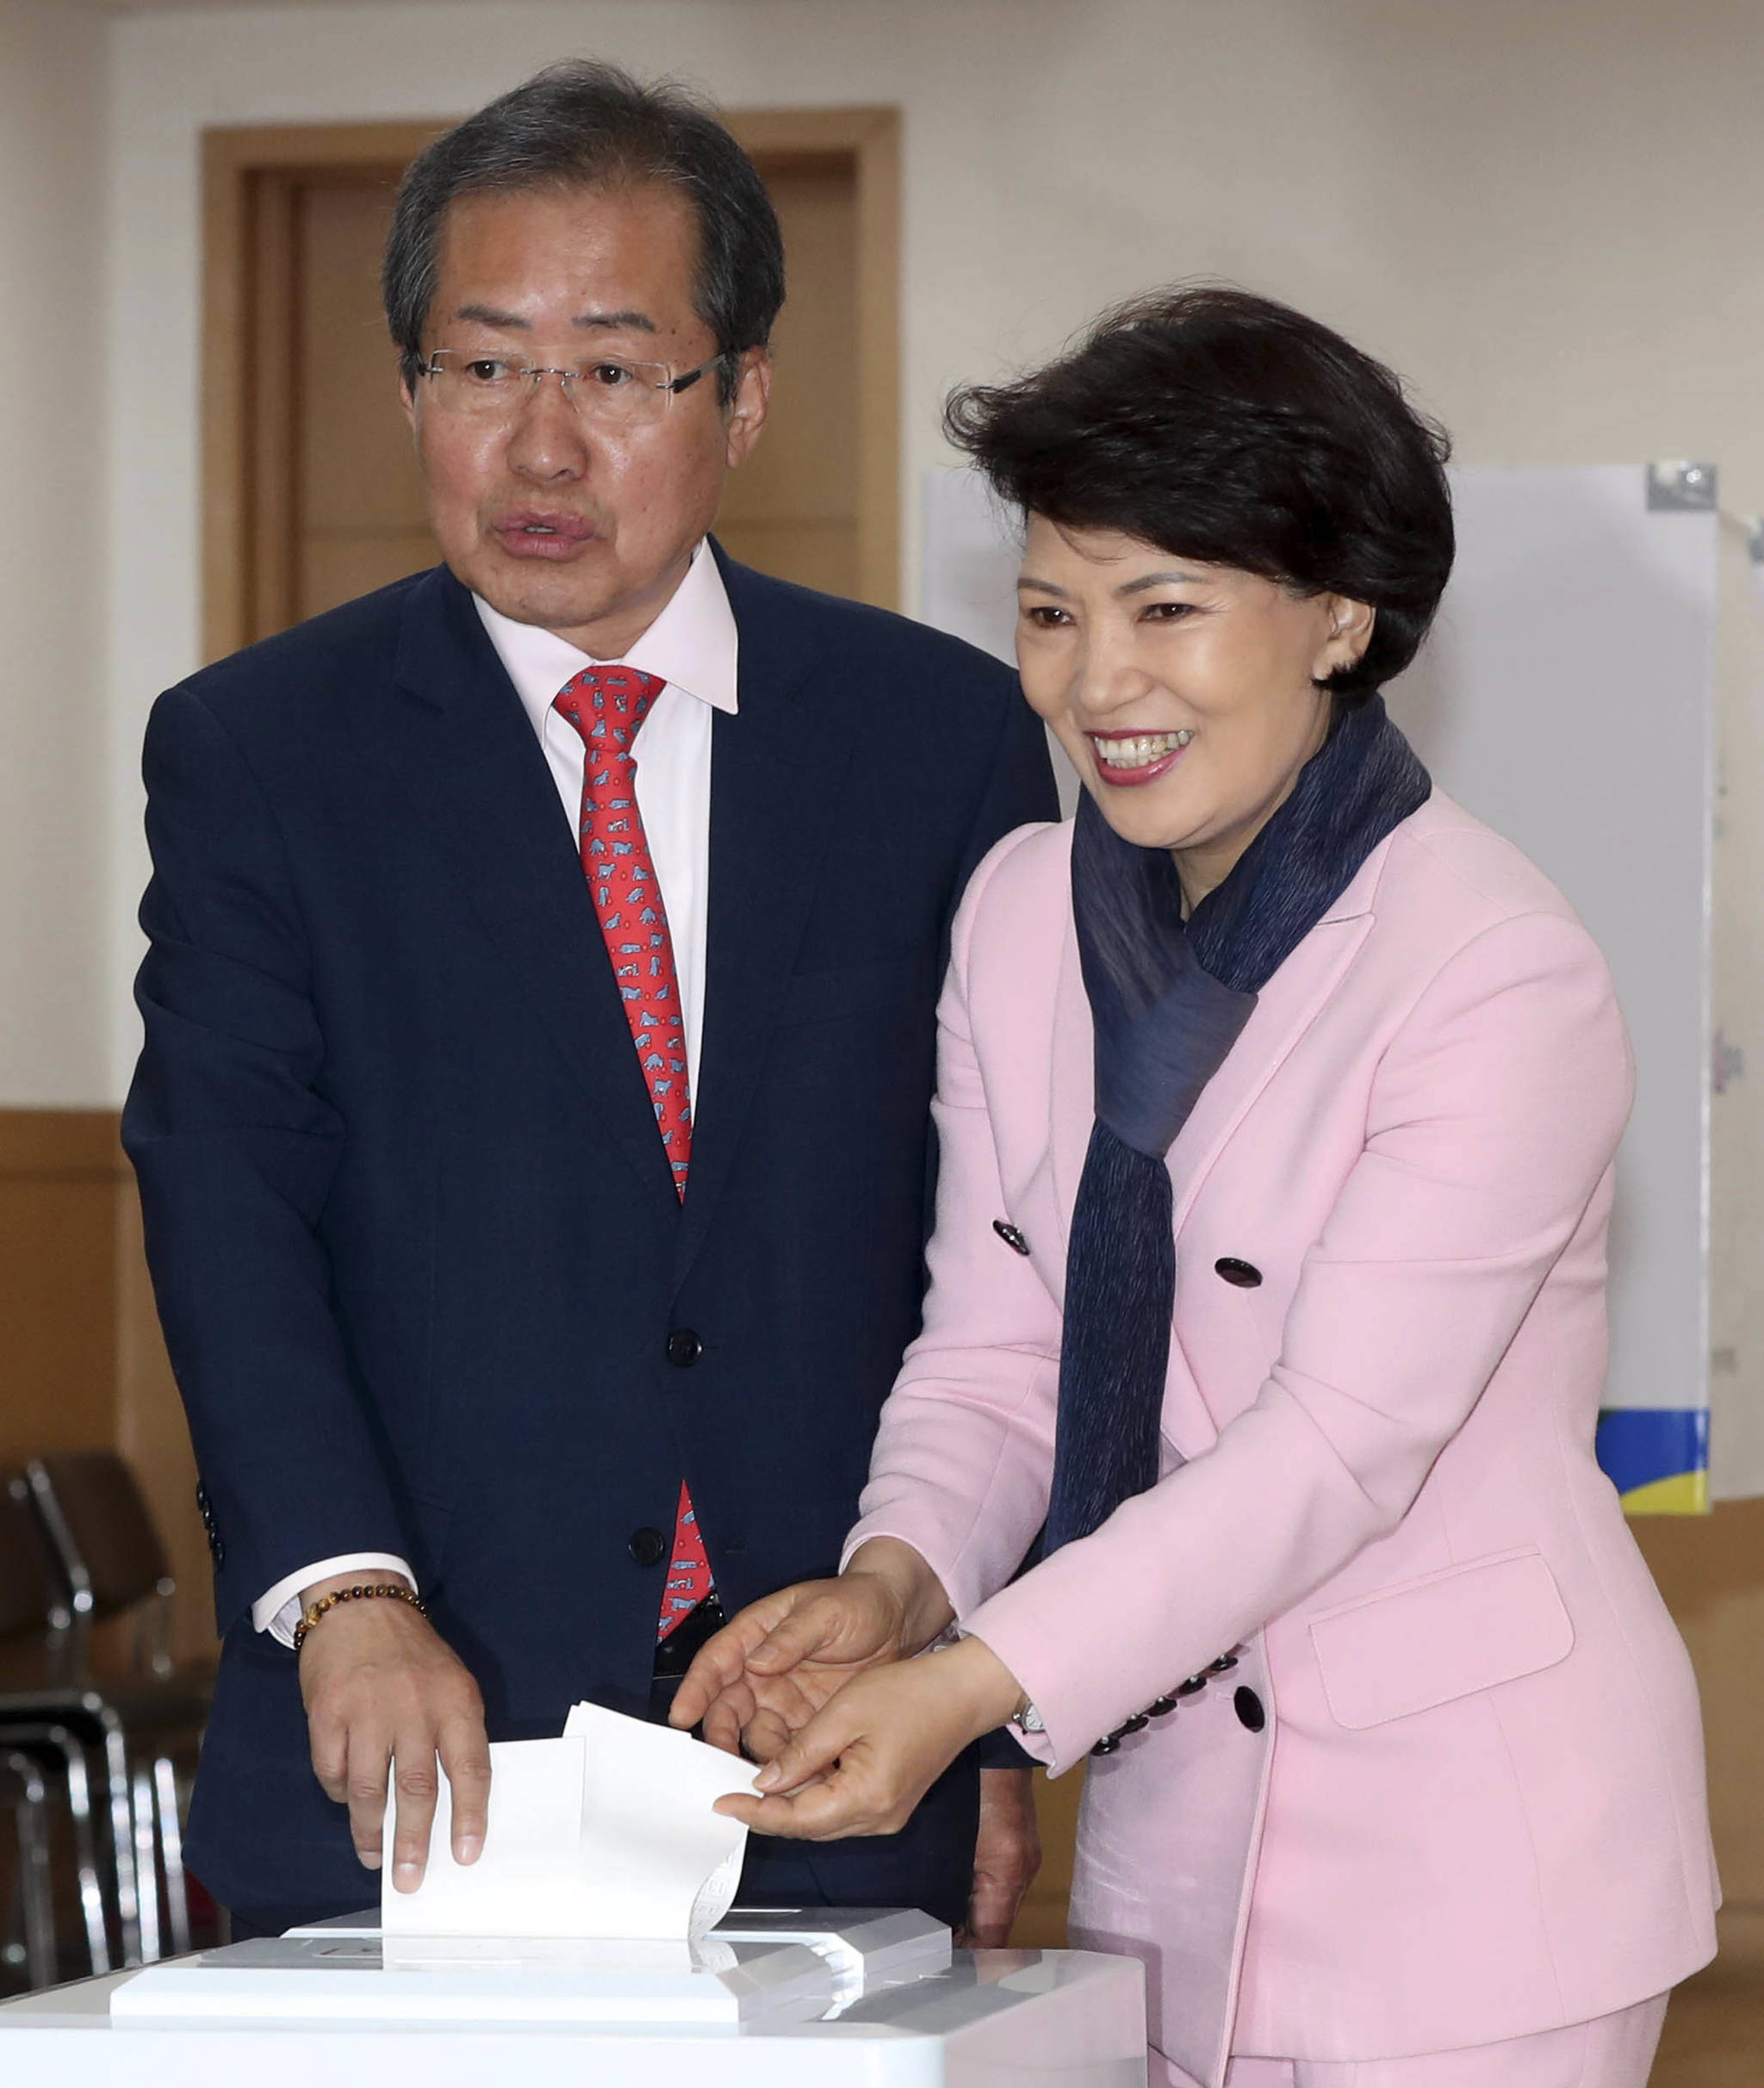 홍준표 자유한국당 후보가 9일 서울 잠실7동 송파문화원 투표소에서 부인 이순삼 씨와 함께 투표했다.강정현 기자